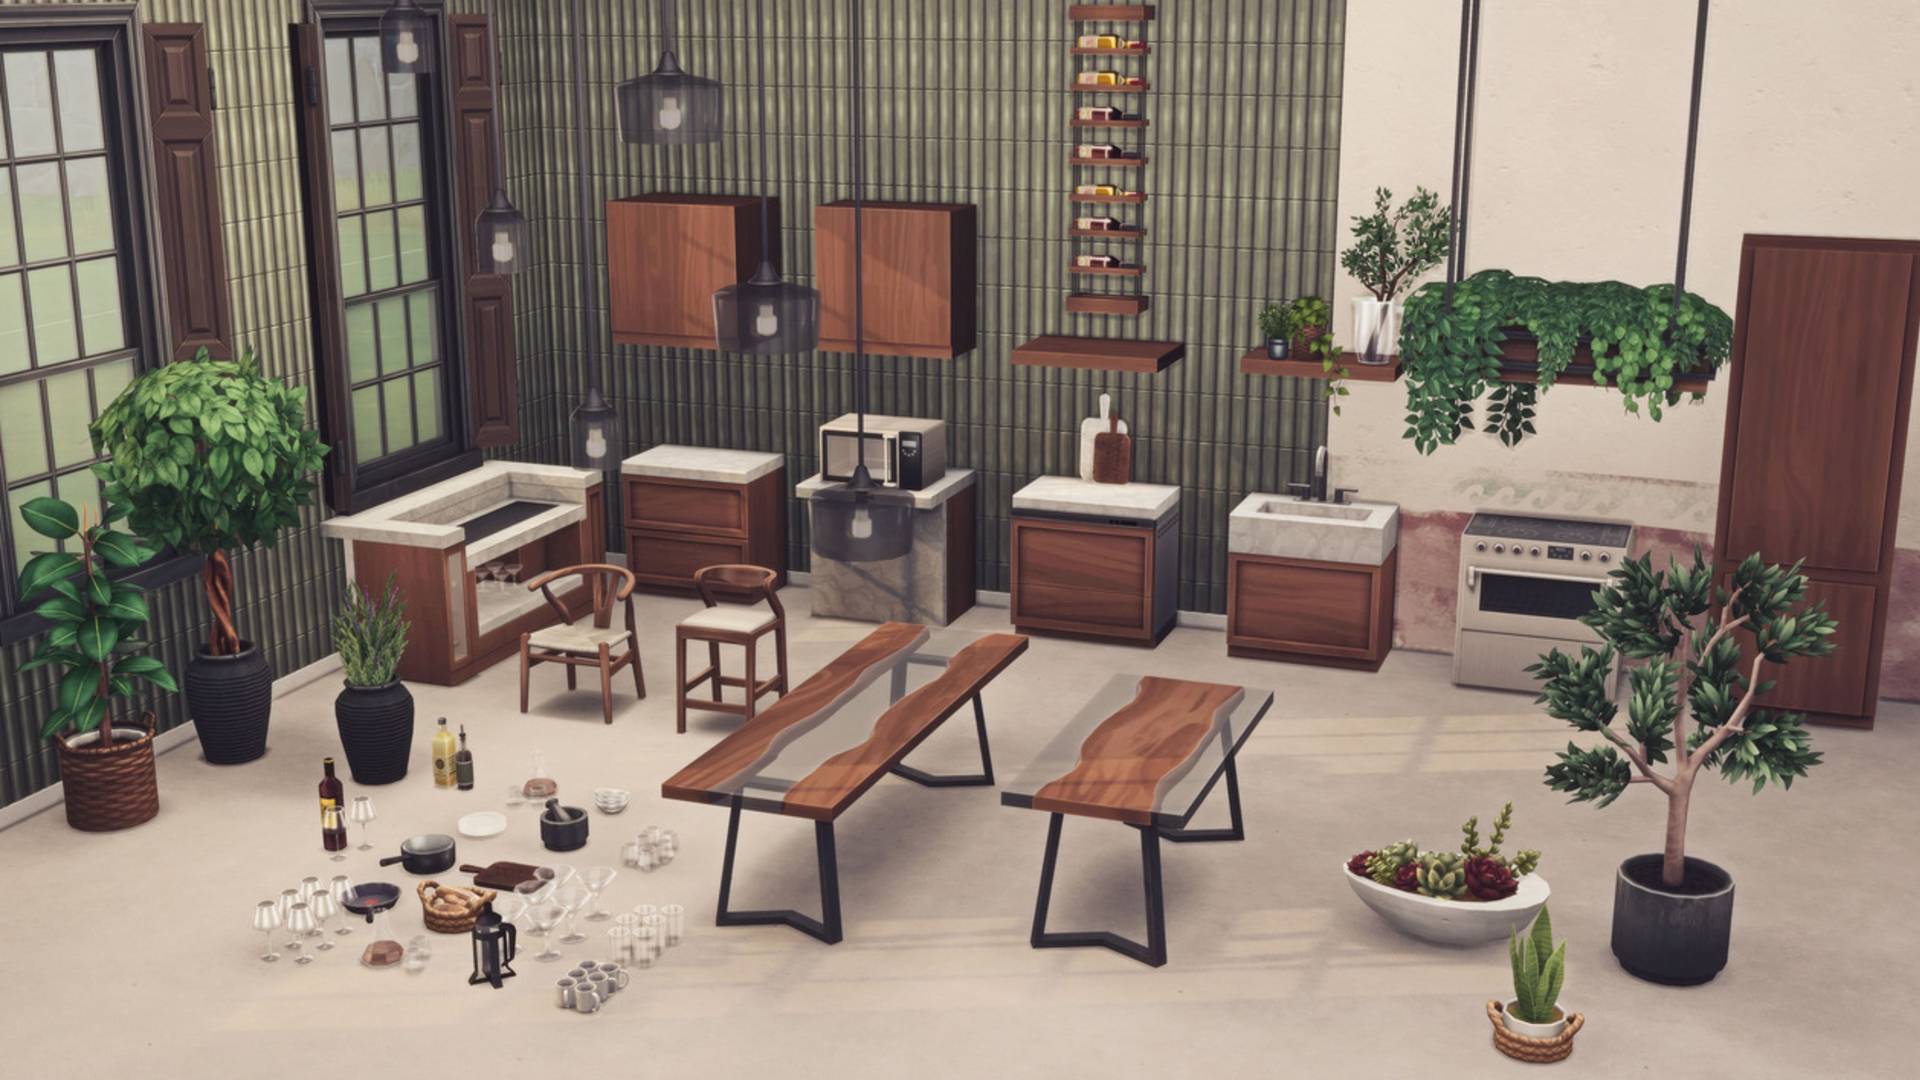 Sims 4 CC: un conjunto de artículos de cocina temáticos personalizados para una casa, que incluyen copas de vino, barras de bar, unidades y plantas.